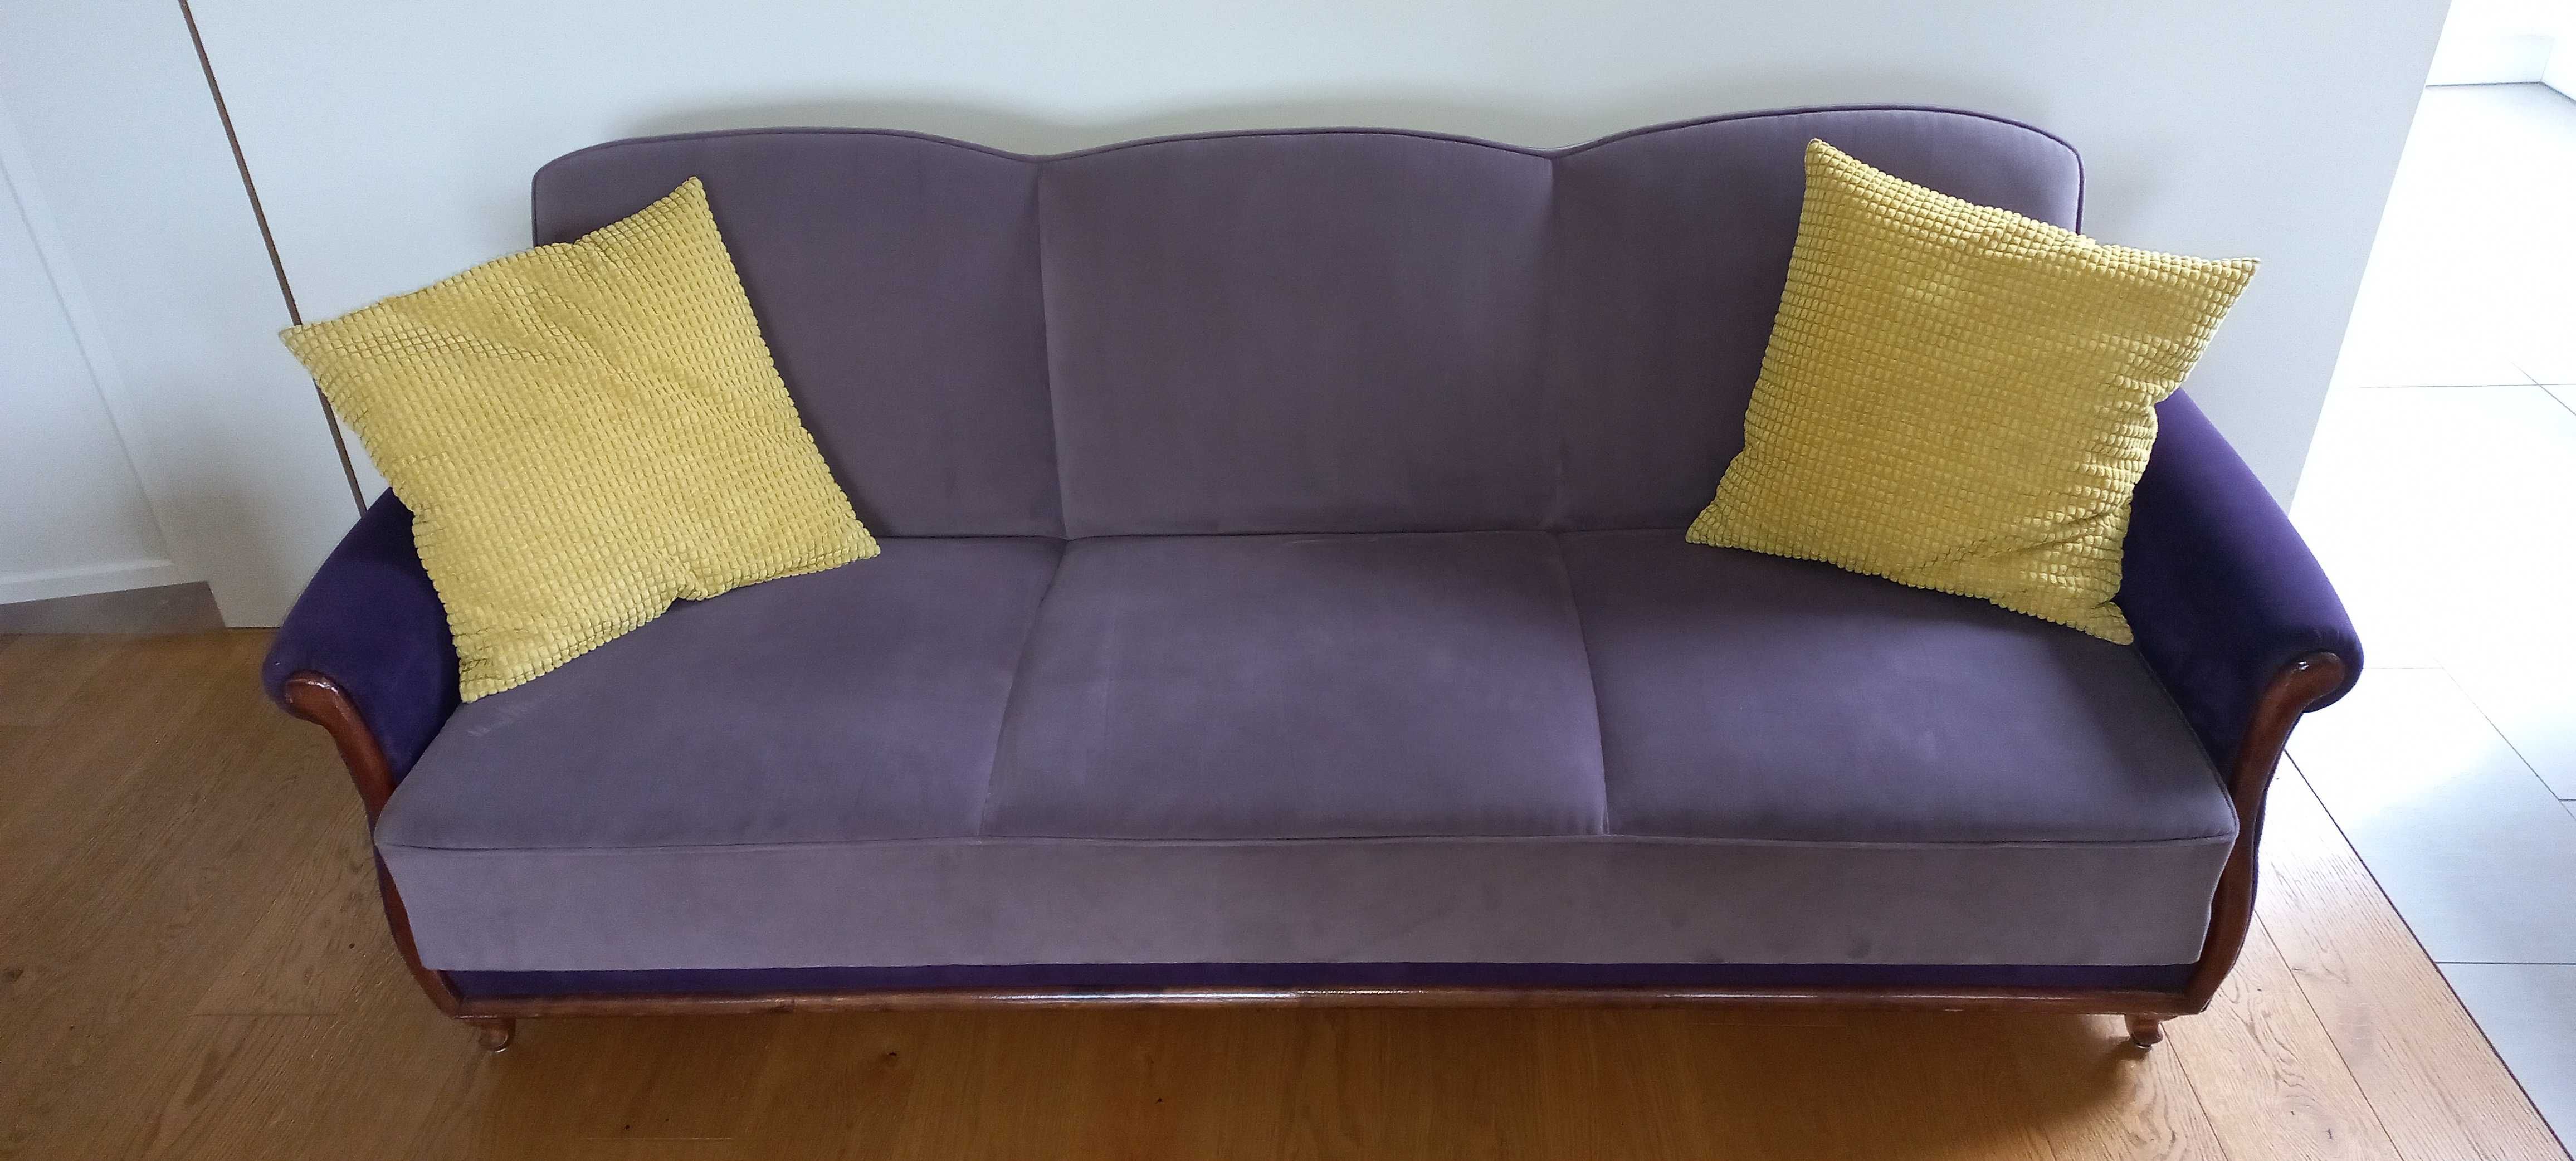 Kanapa sofa wersalka Lirka po renowacji -  nowe obicie